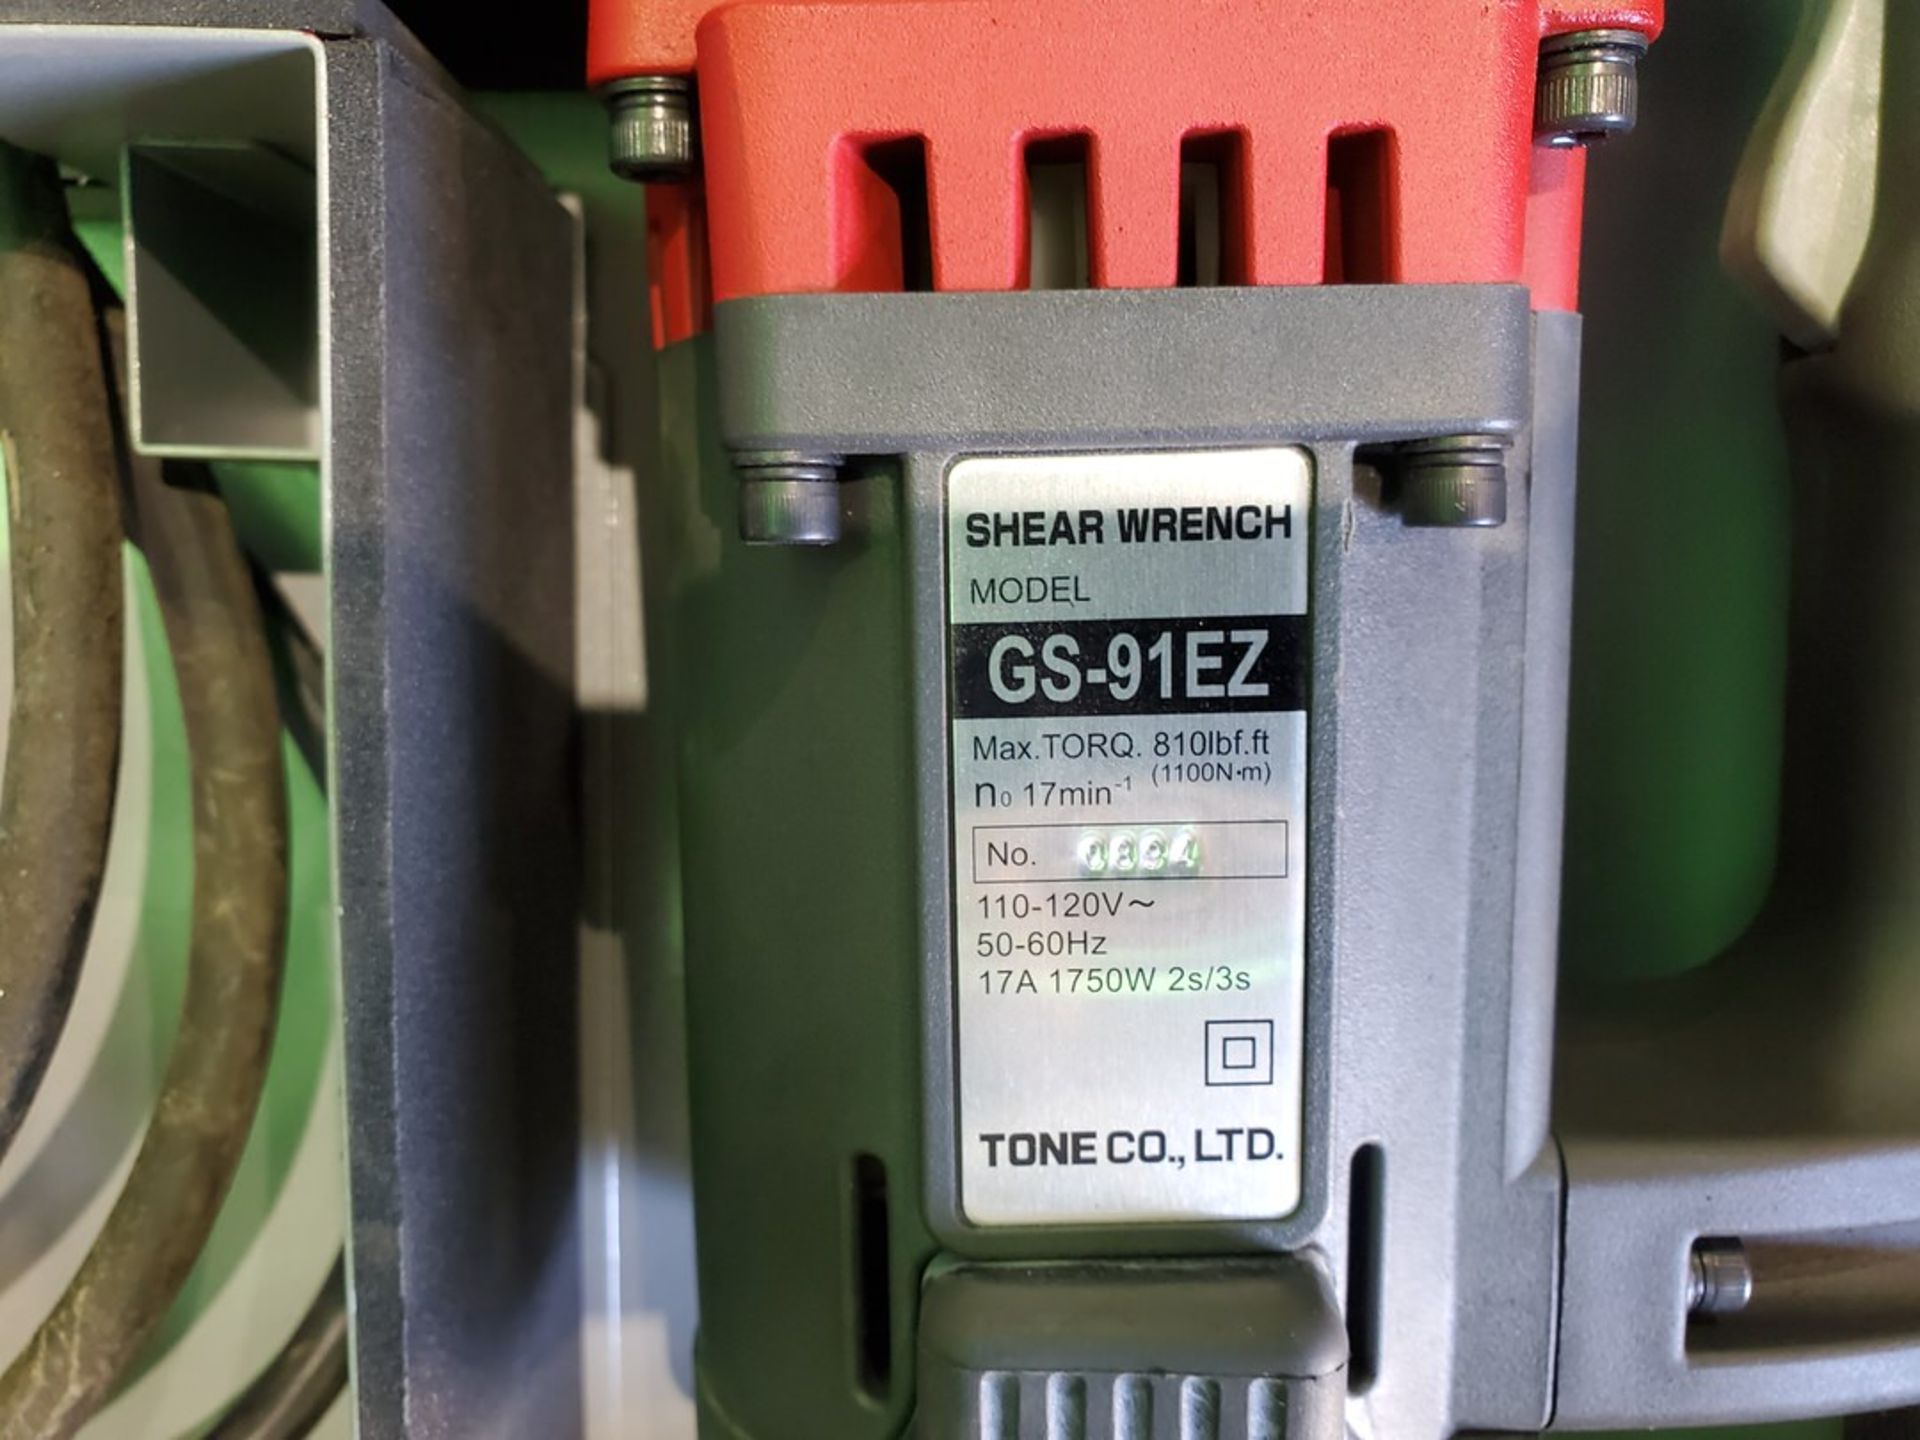 Tone GS91EZ Shear Wrench 110-120V, 50/60HZ, 17A, 1750W, 8101b/ft - Image 7 of 7